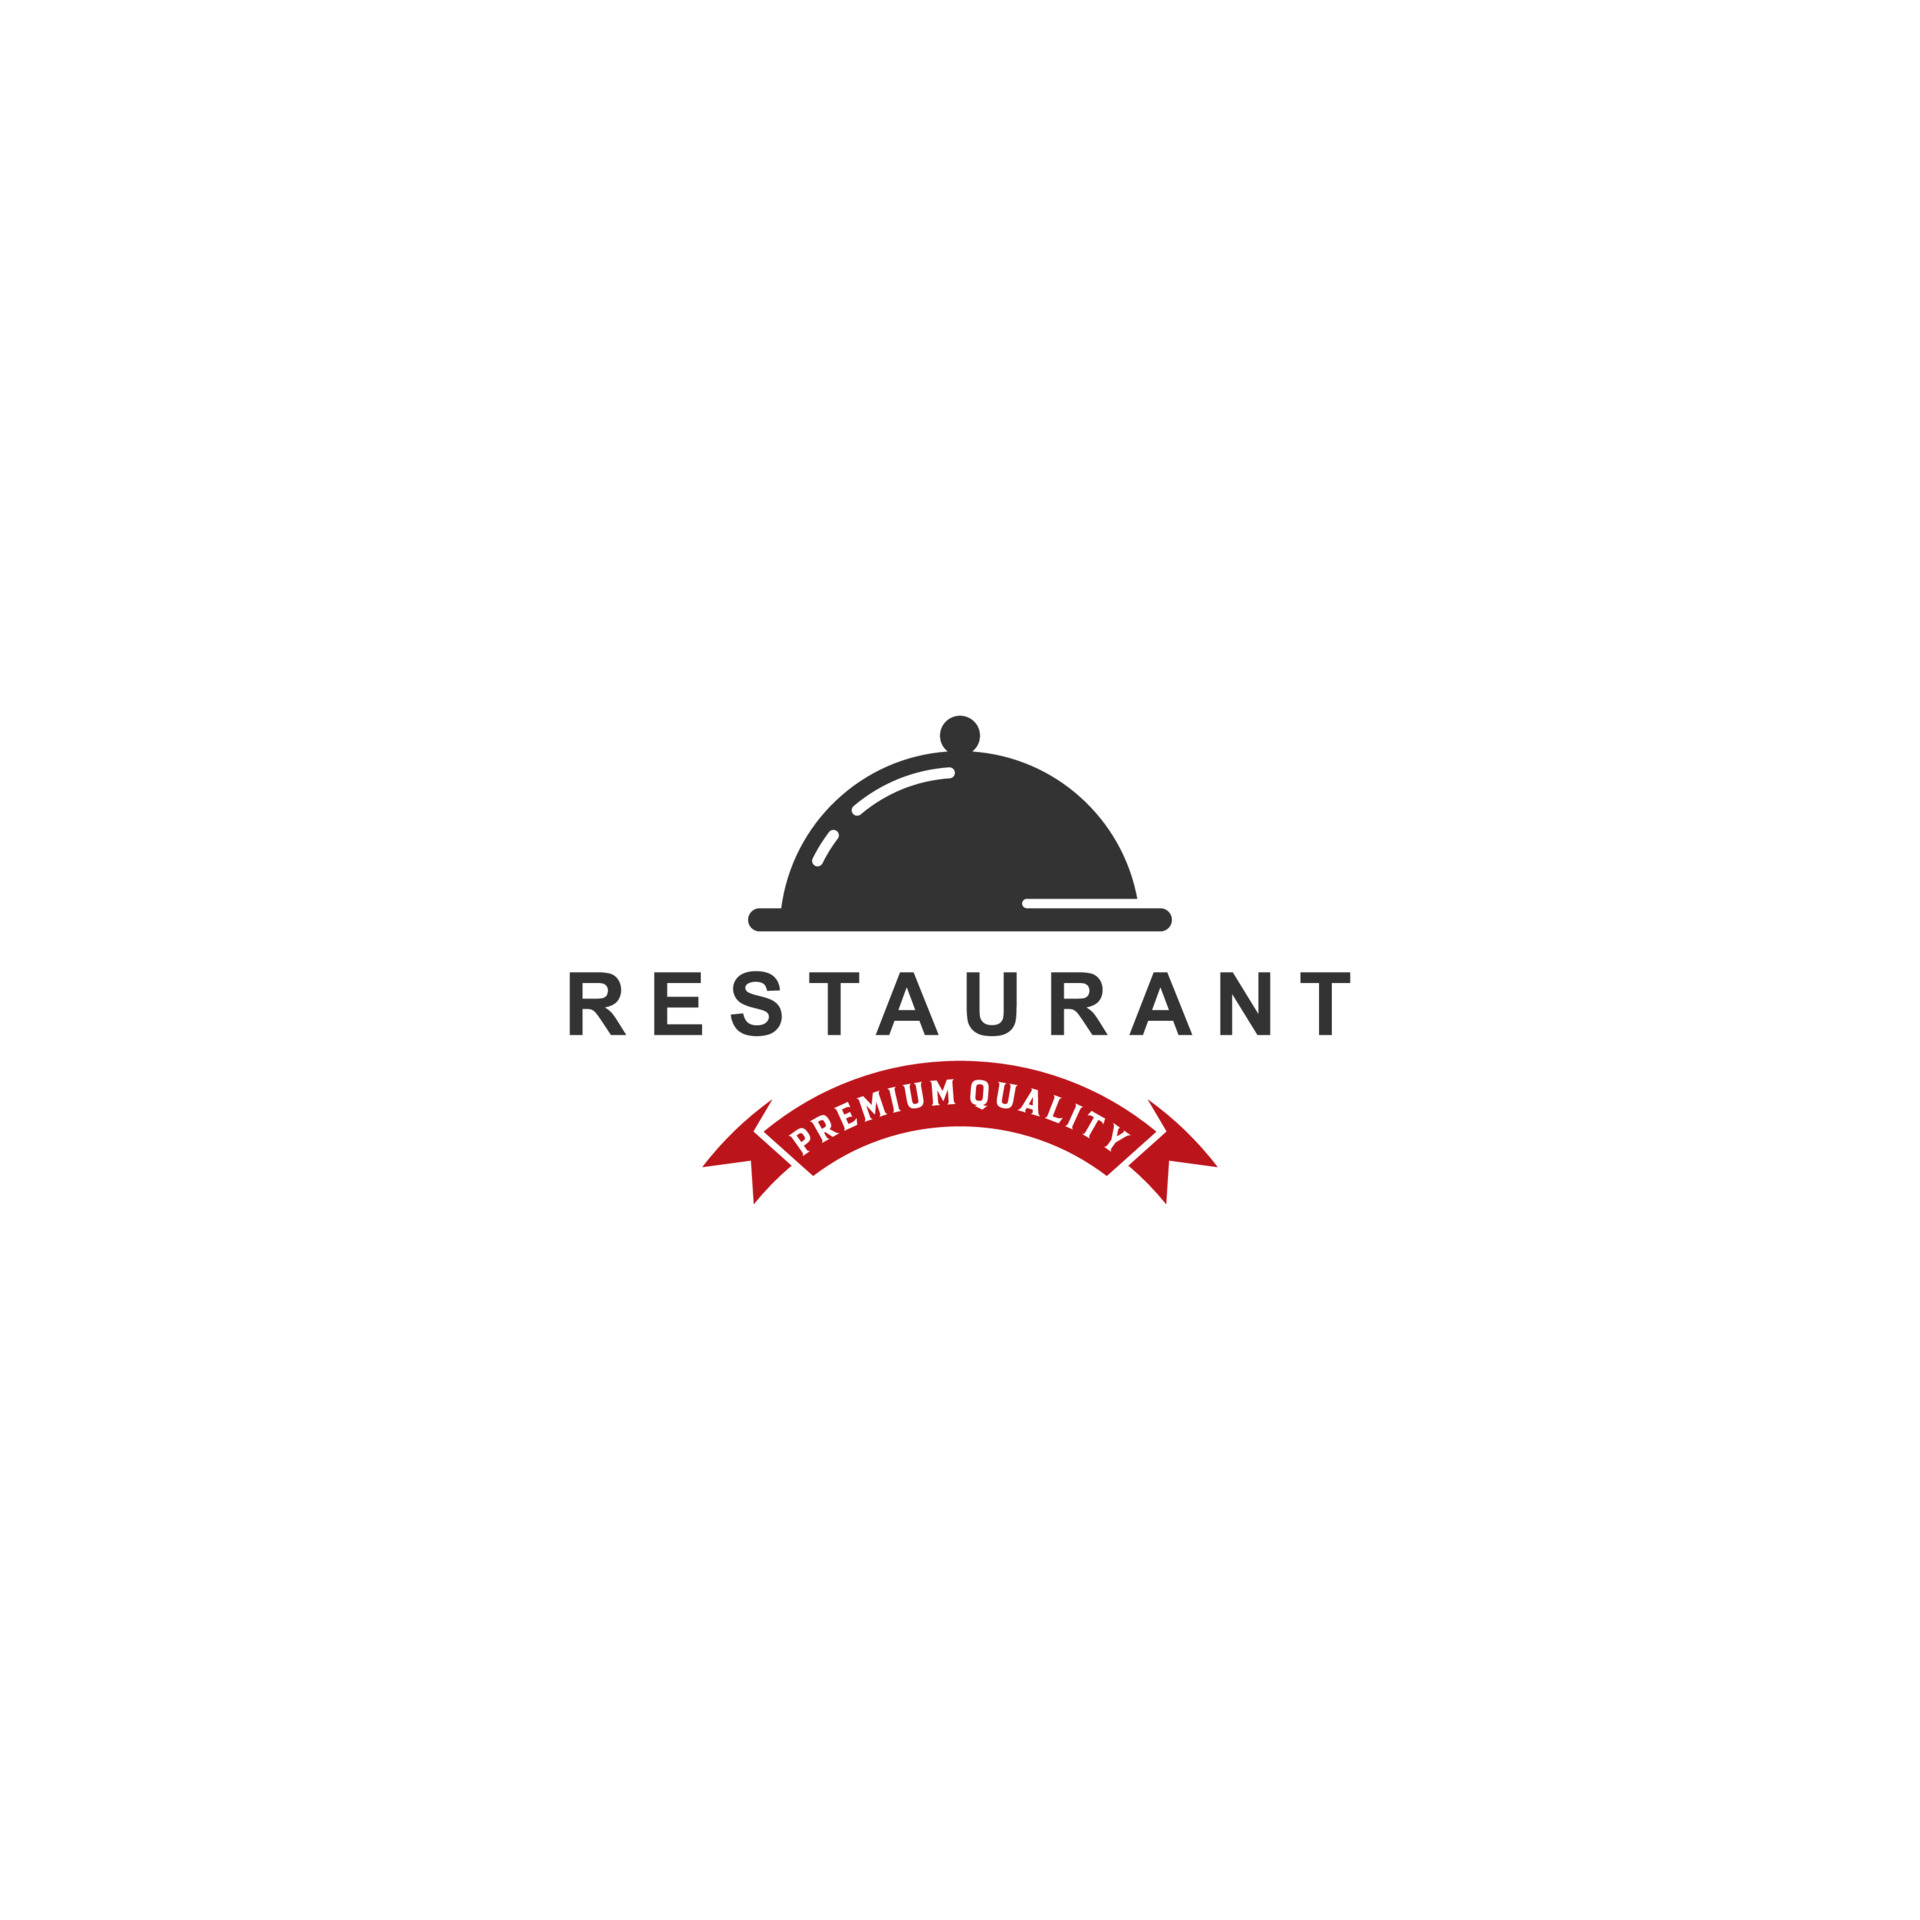 logo for restaurant on white background 3588946 Vector Art at Vecteezy